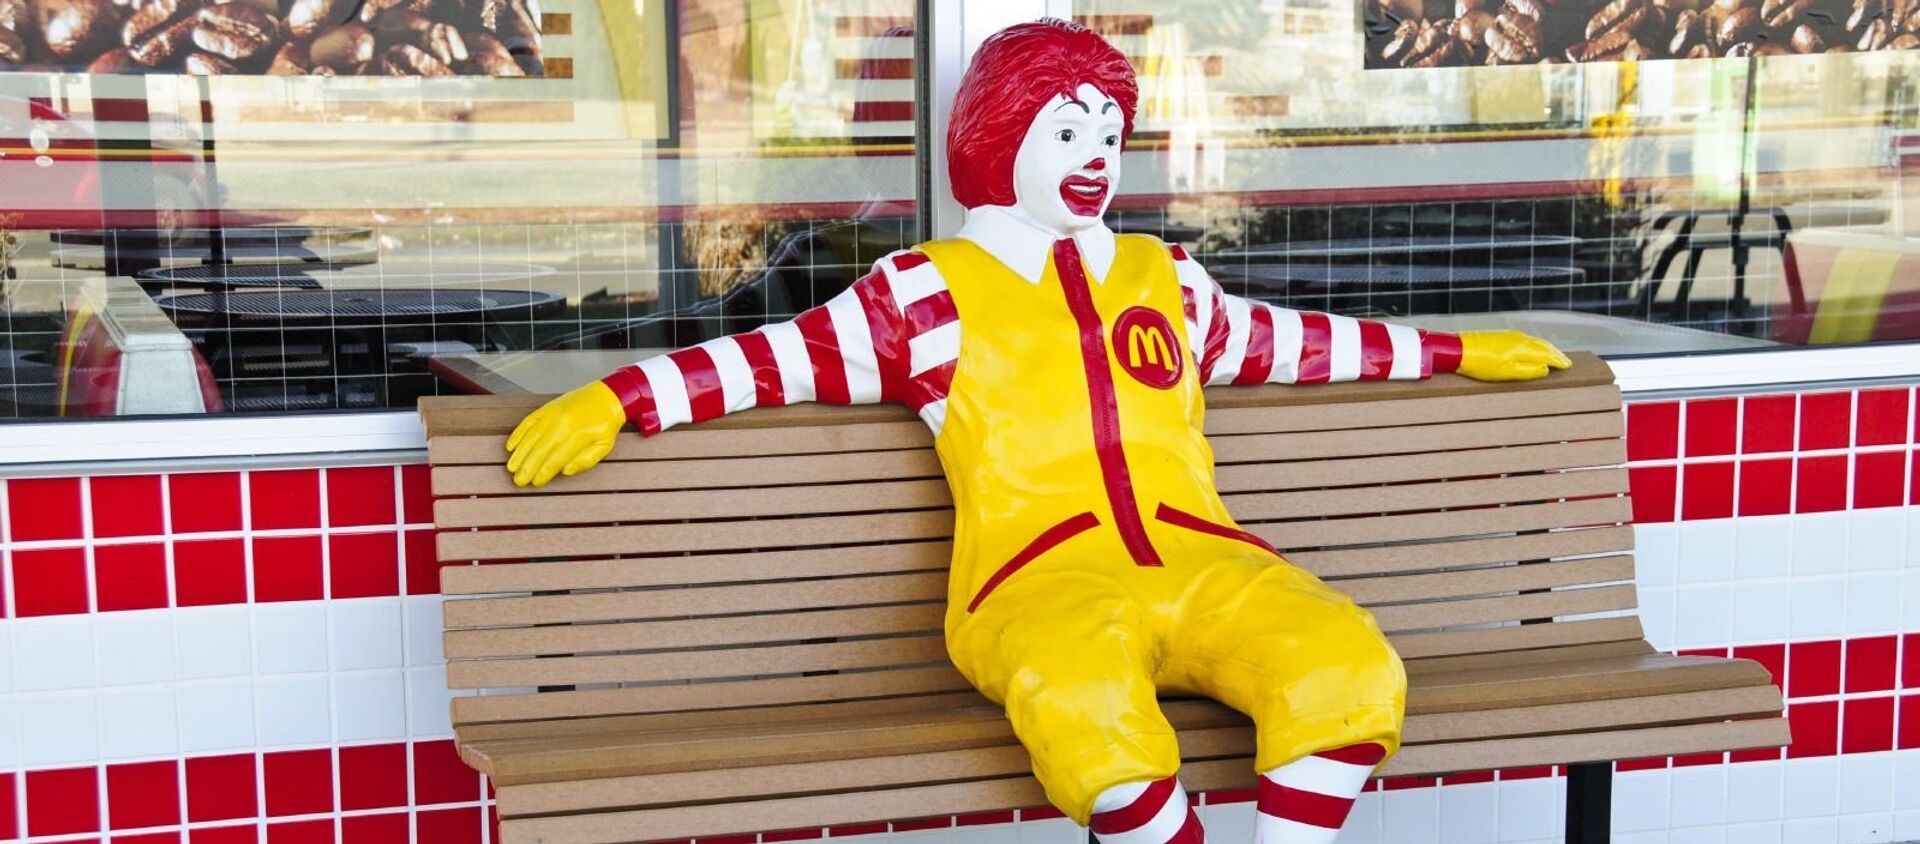 Ronald Mcdonald, mascota oficial de McDonald's - Sputnik Mundo, 1920, 16.07.2018